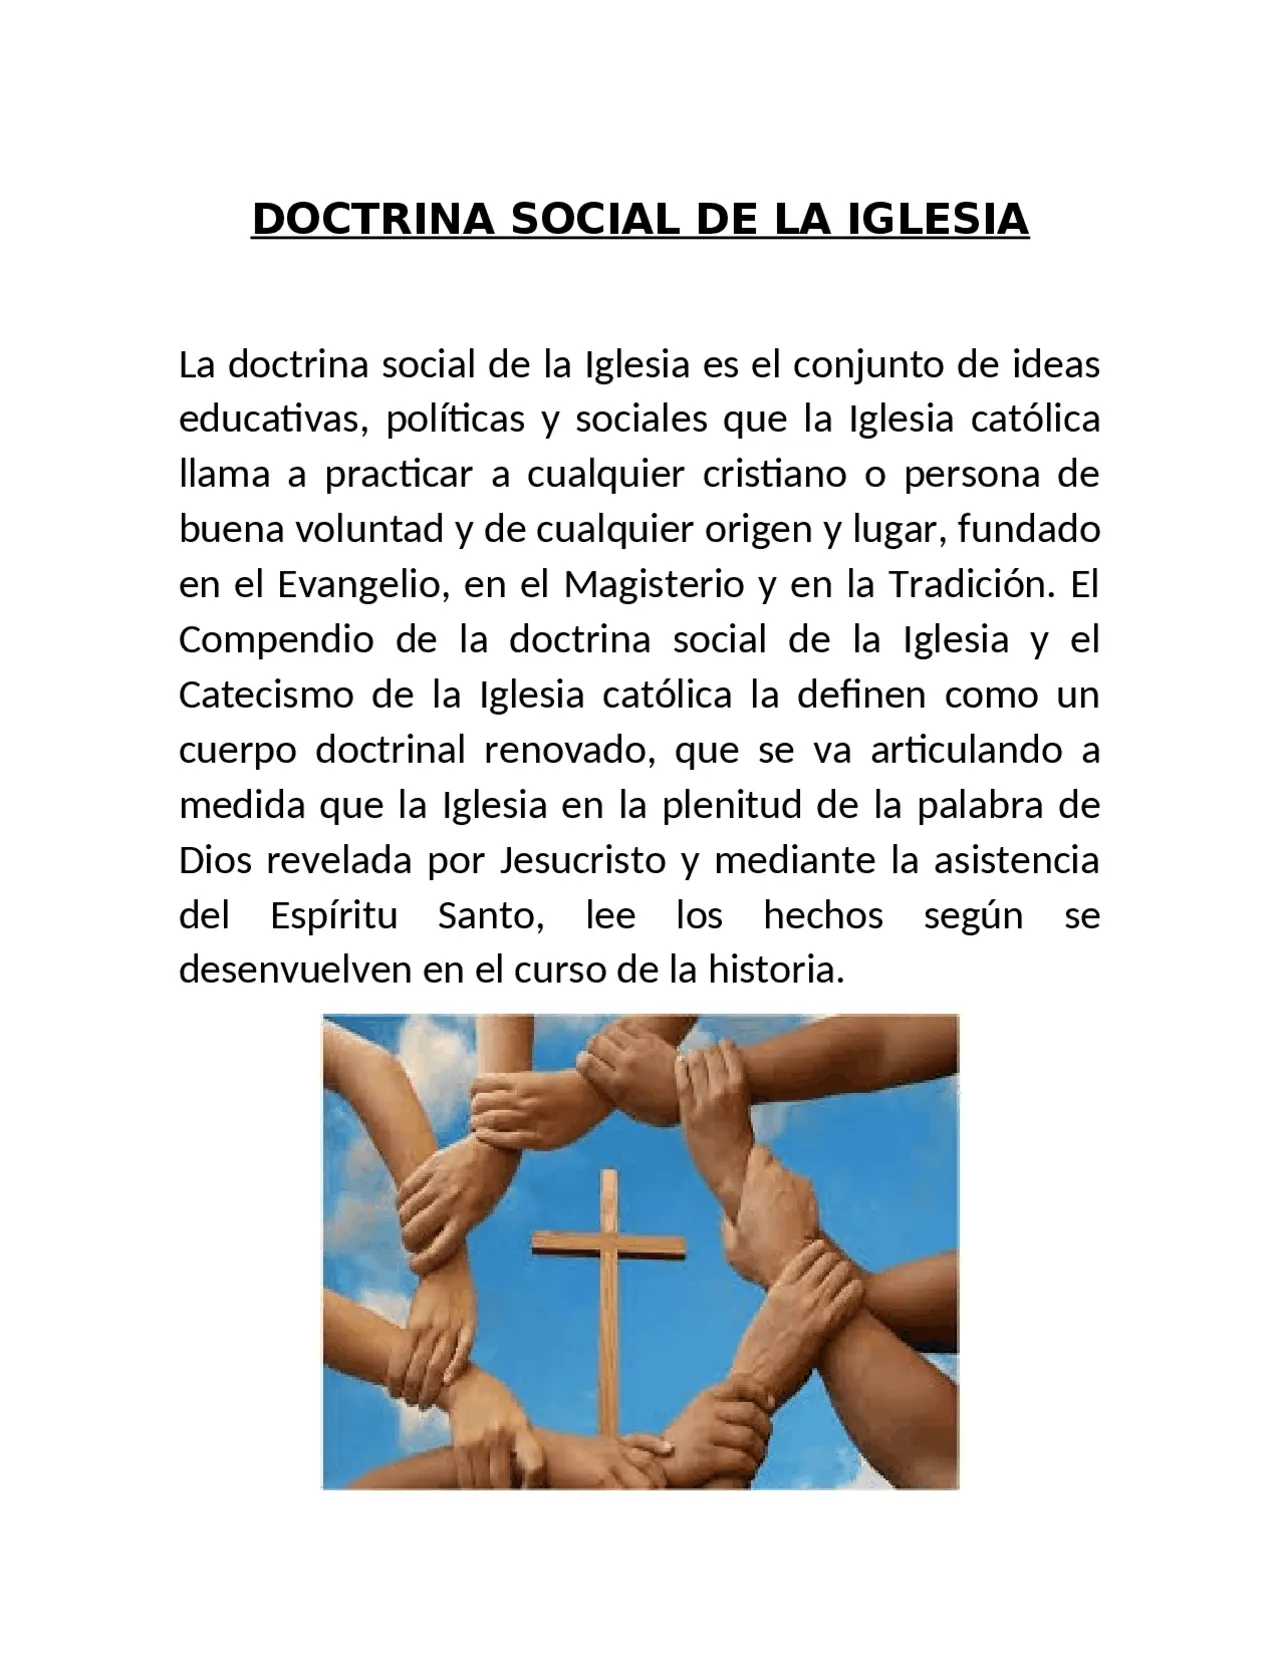 doctrina social de la iglesia resumen - Qué es la doctrina social de la Iglesia y cuál es su objetivo